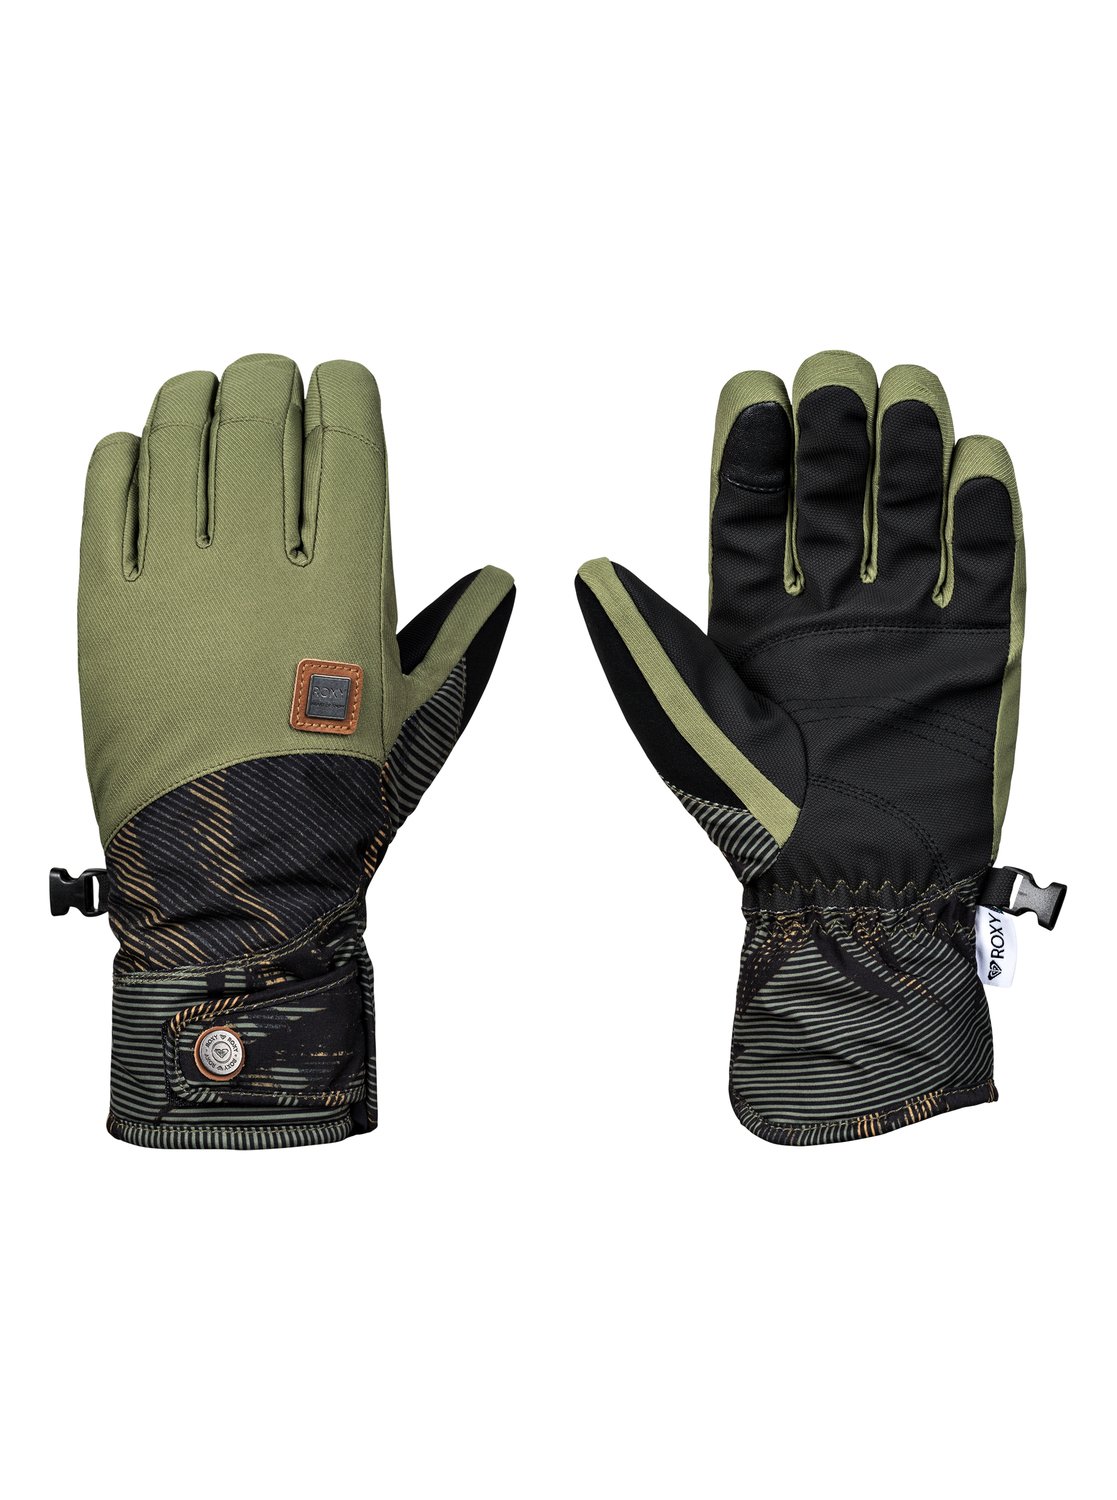 Vermont - Ski/Snowboard Gloves